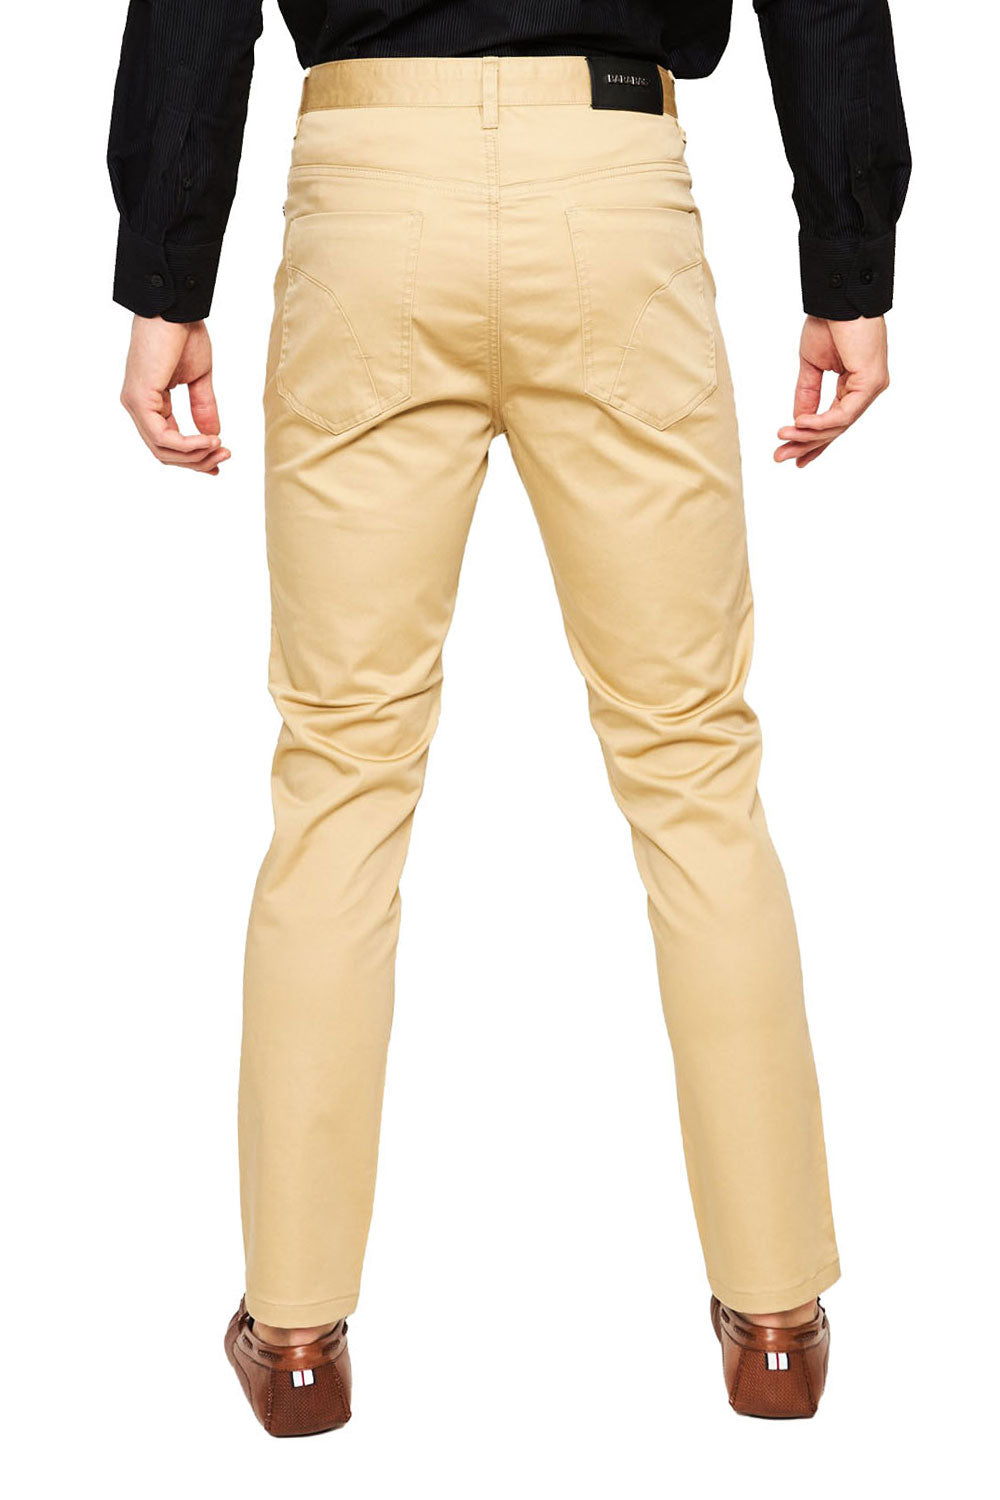 Barabas Men's Solid Color Front Button Fasten Classic Fit Pants B2073  KHAKI